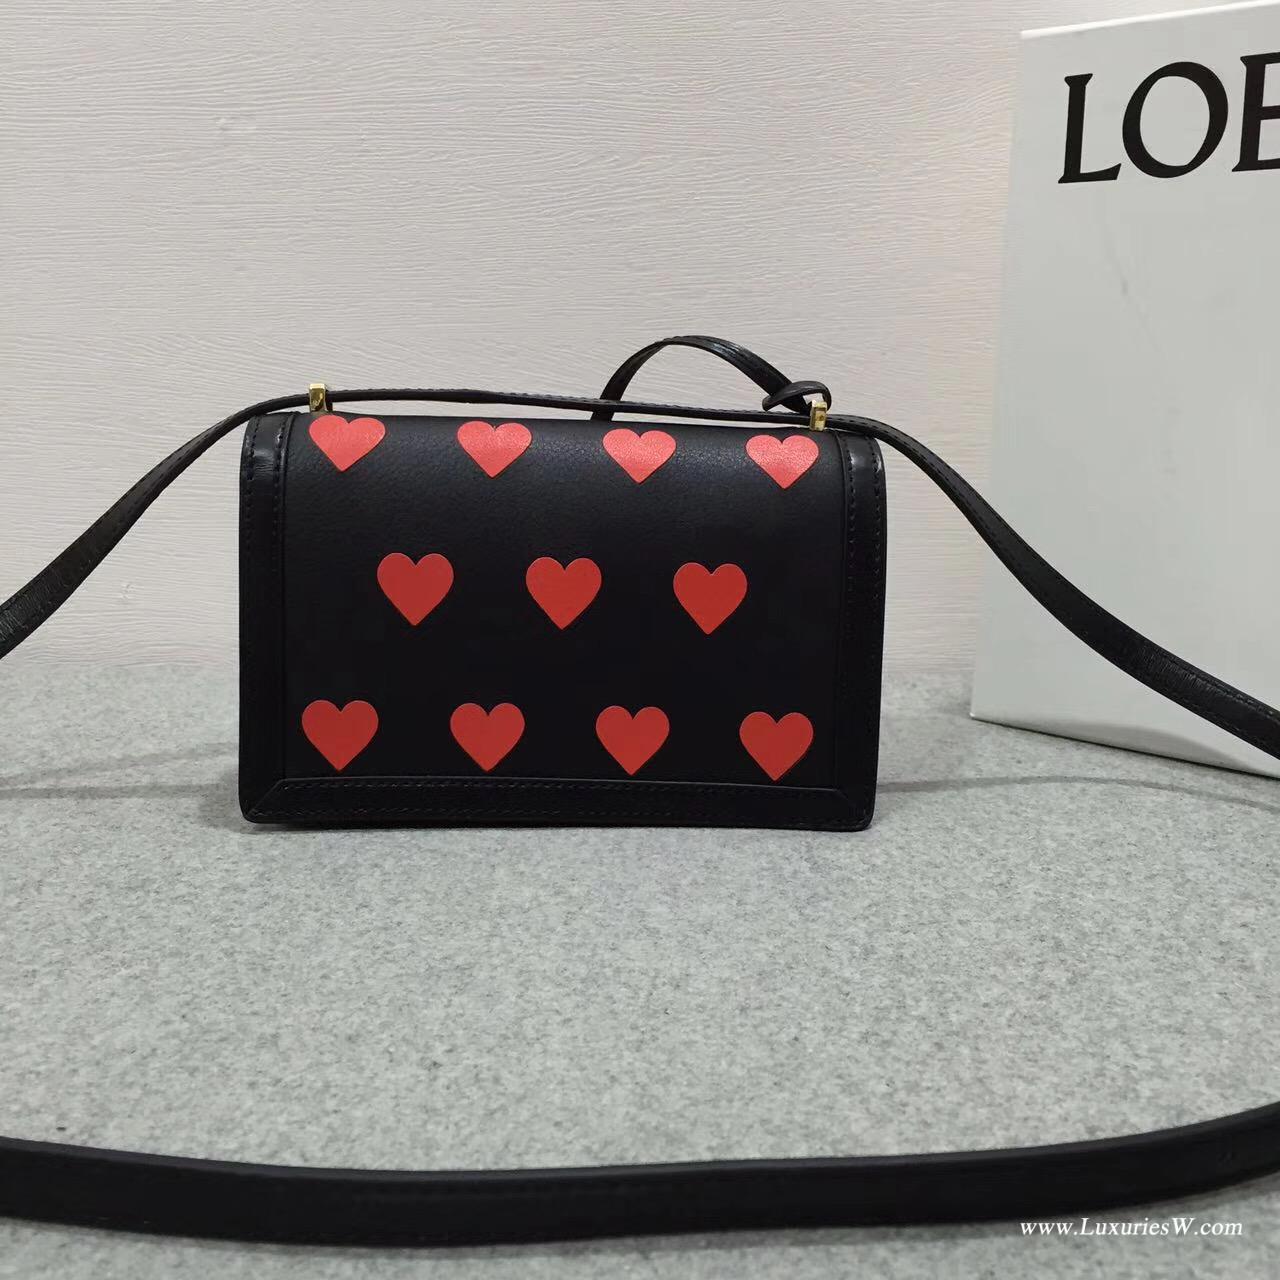 Loewe Barcelona Hearts心愛限量系 紅色愛心圖 搭配黑色小牛皮